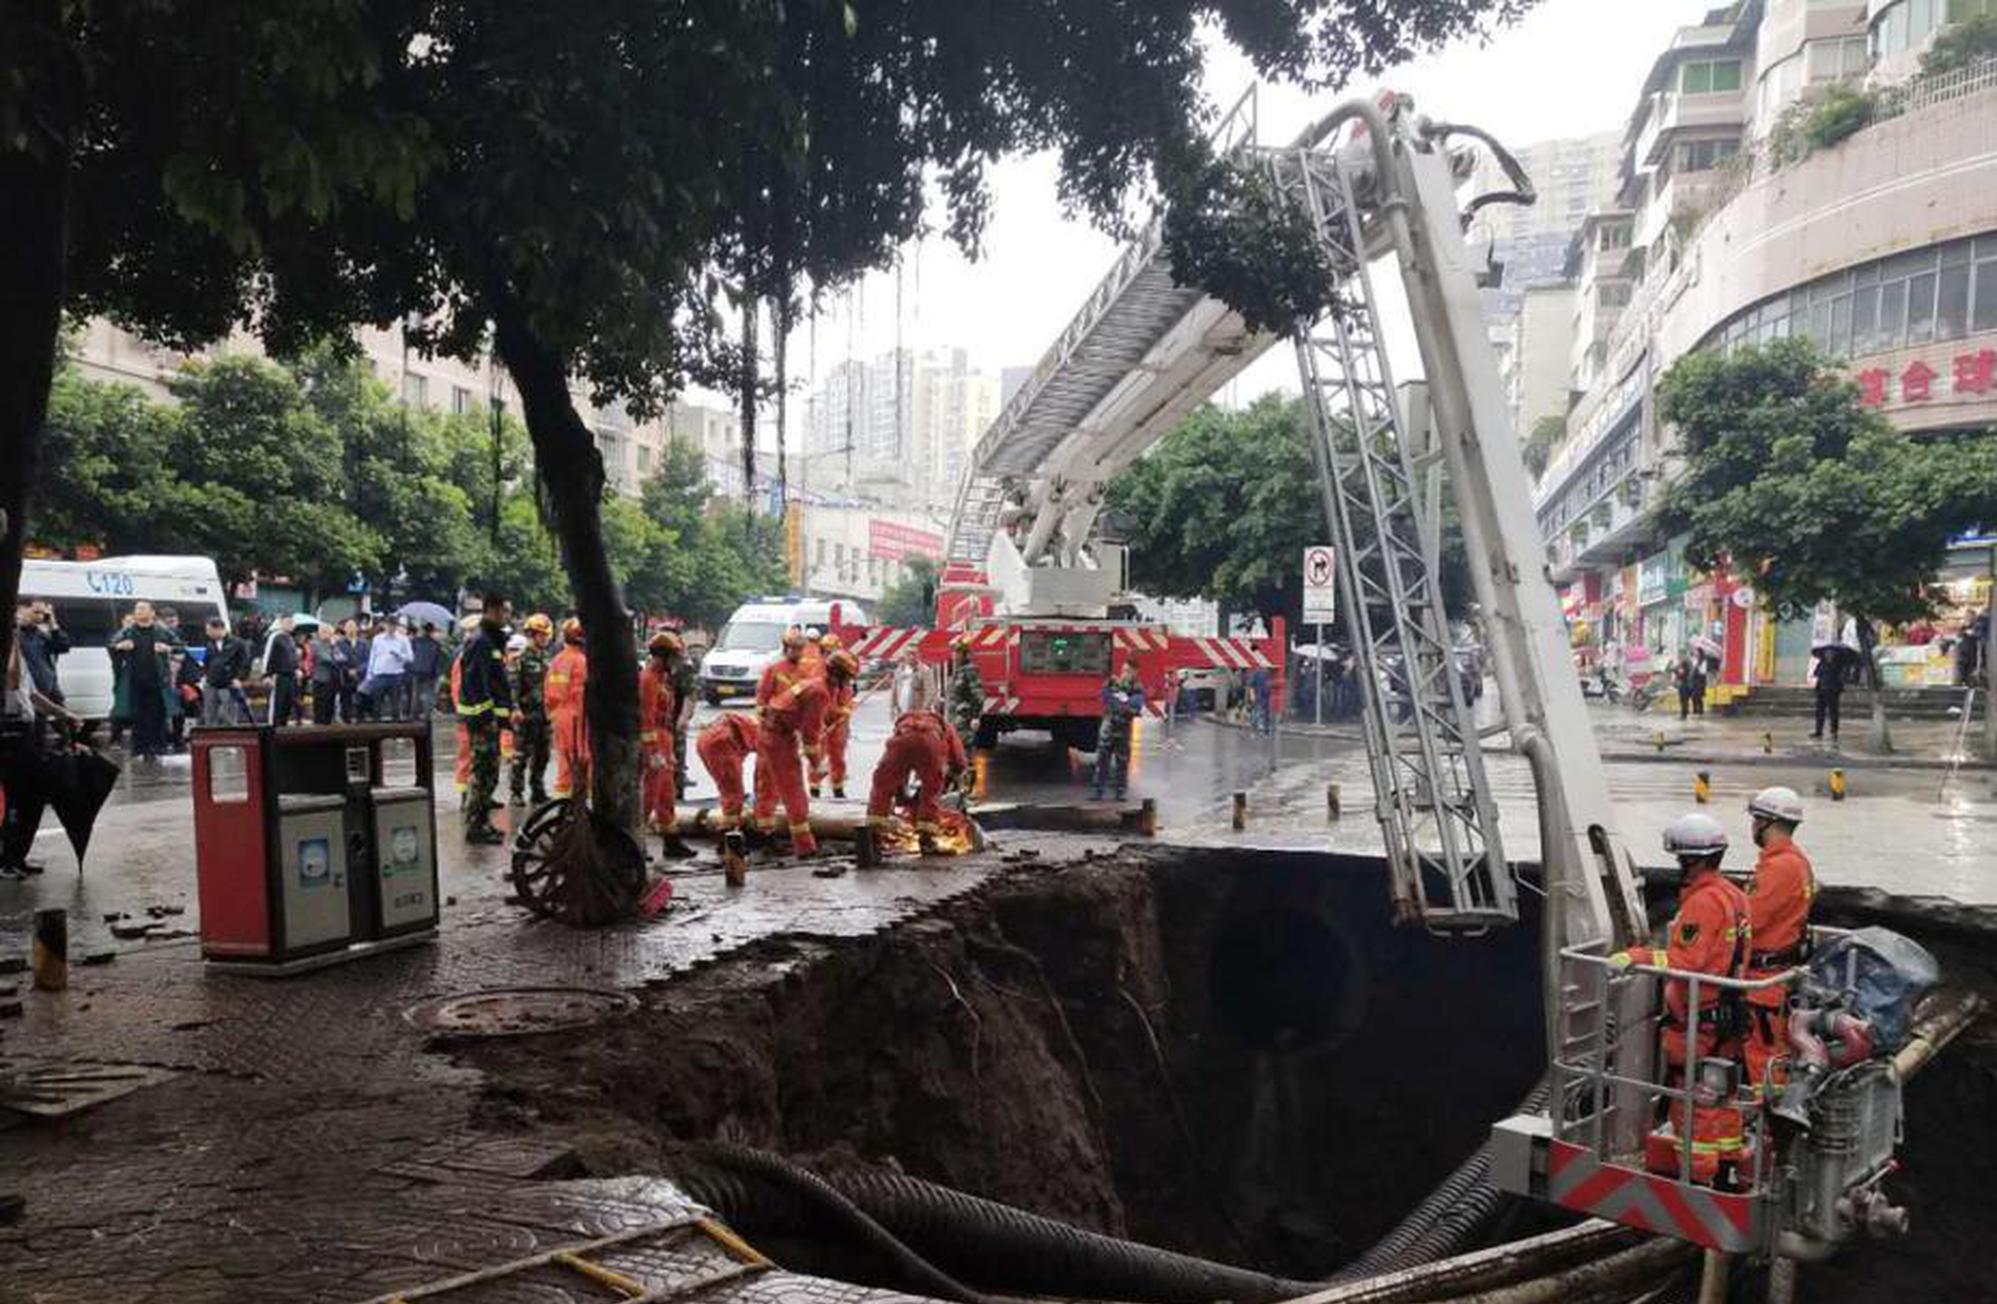 哈尔滨太阳岛景区酒店火灾 107名消防员进场救援